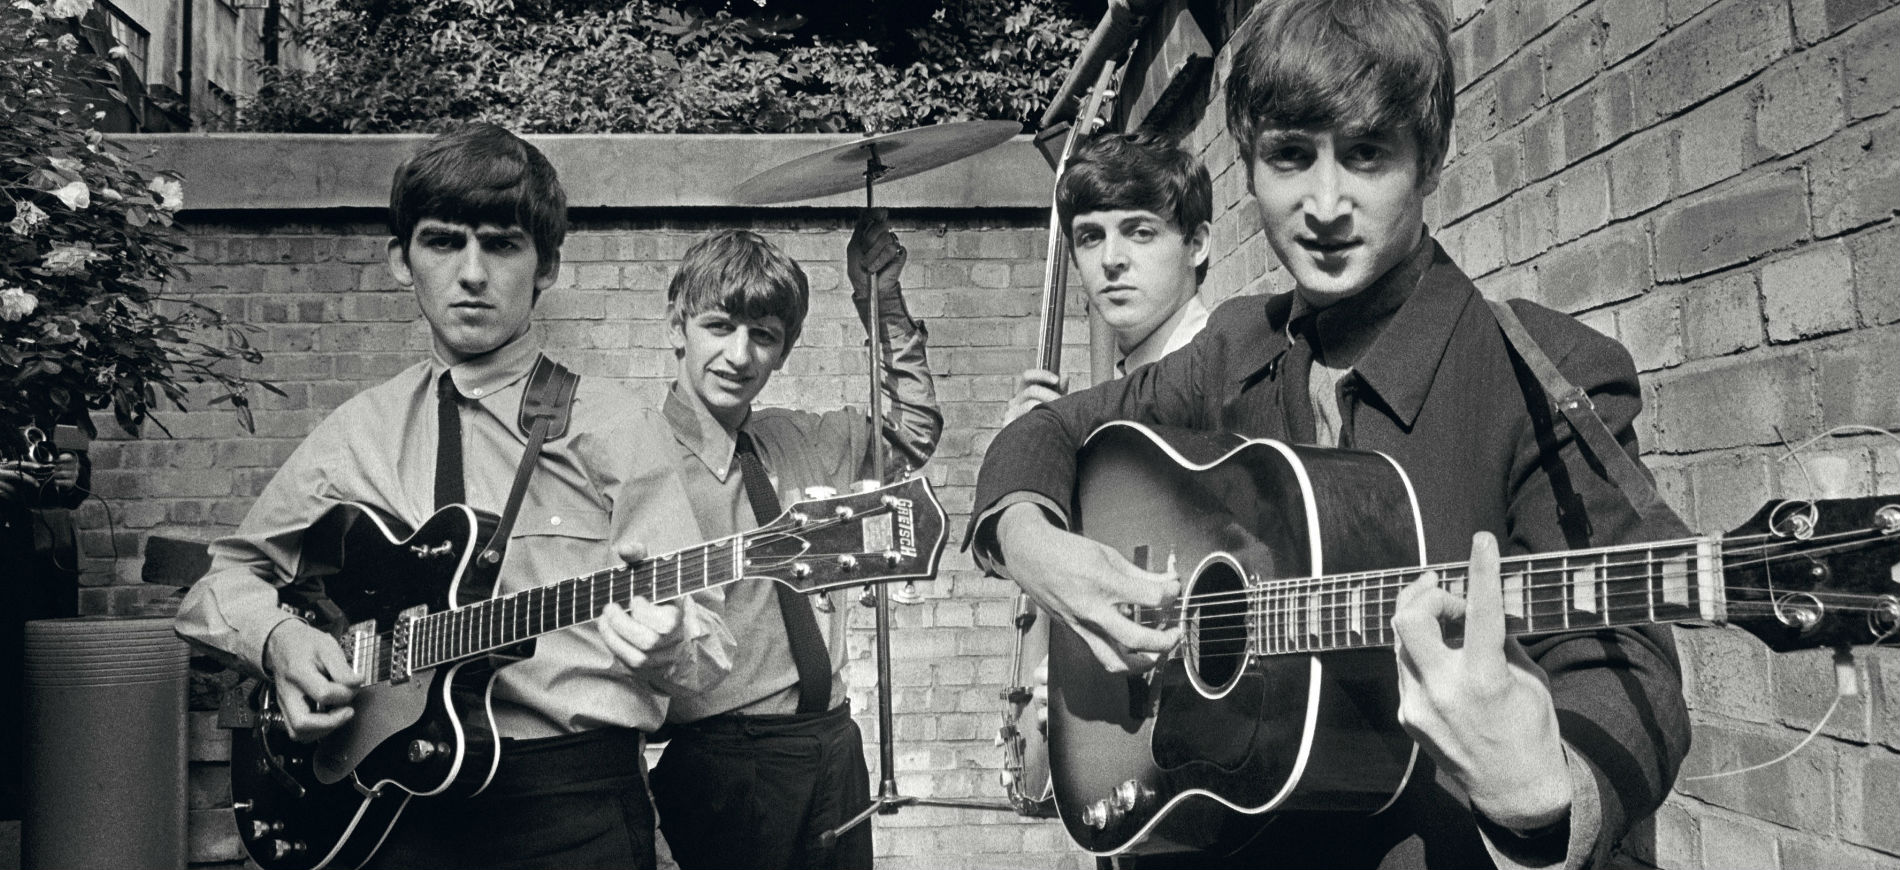 I Beatles negli Abbey Road Studios mentre registrano il loro primo album Please Please Me - The Beatles in Abbey Road Studios recording their first album Please Please Me - Londra / London, 1963 54,9 x 73 cm © Terry O'Neill